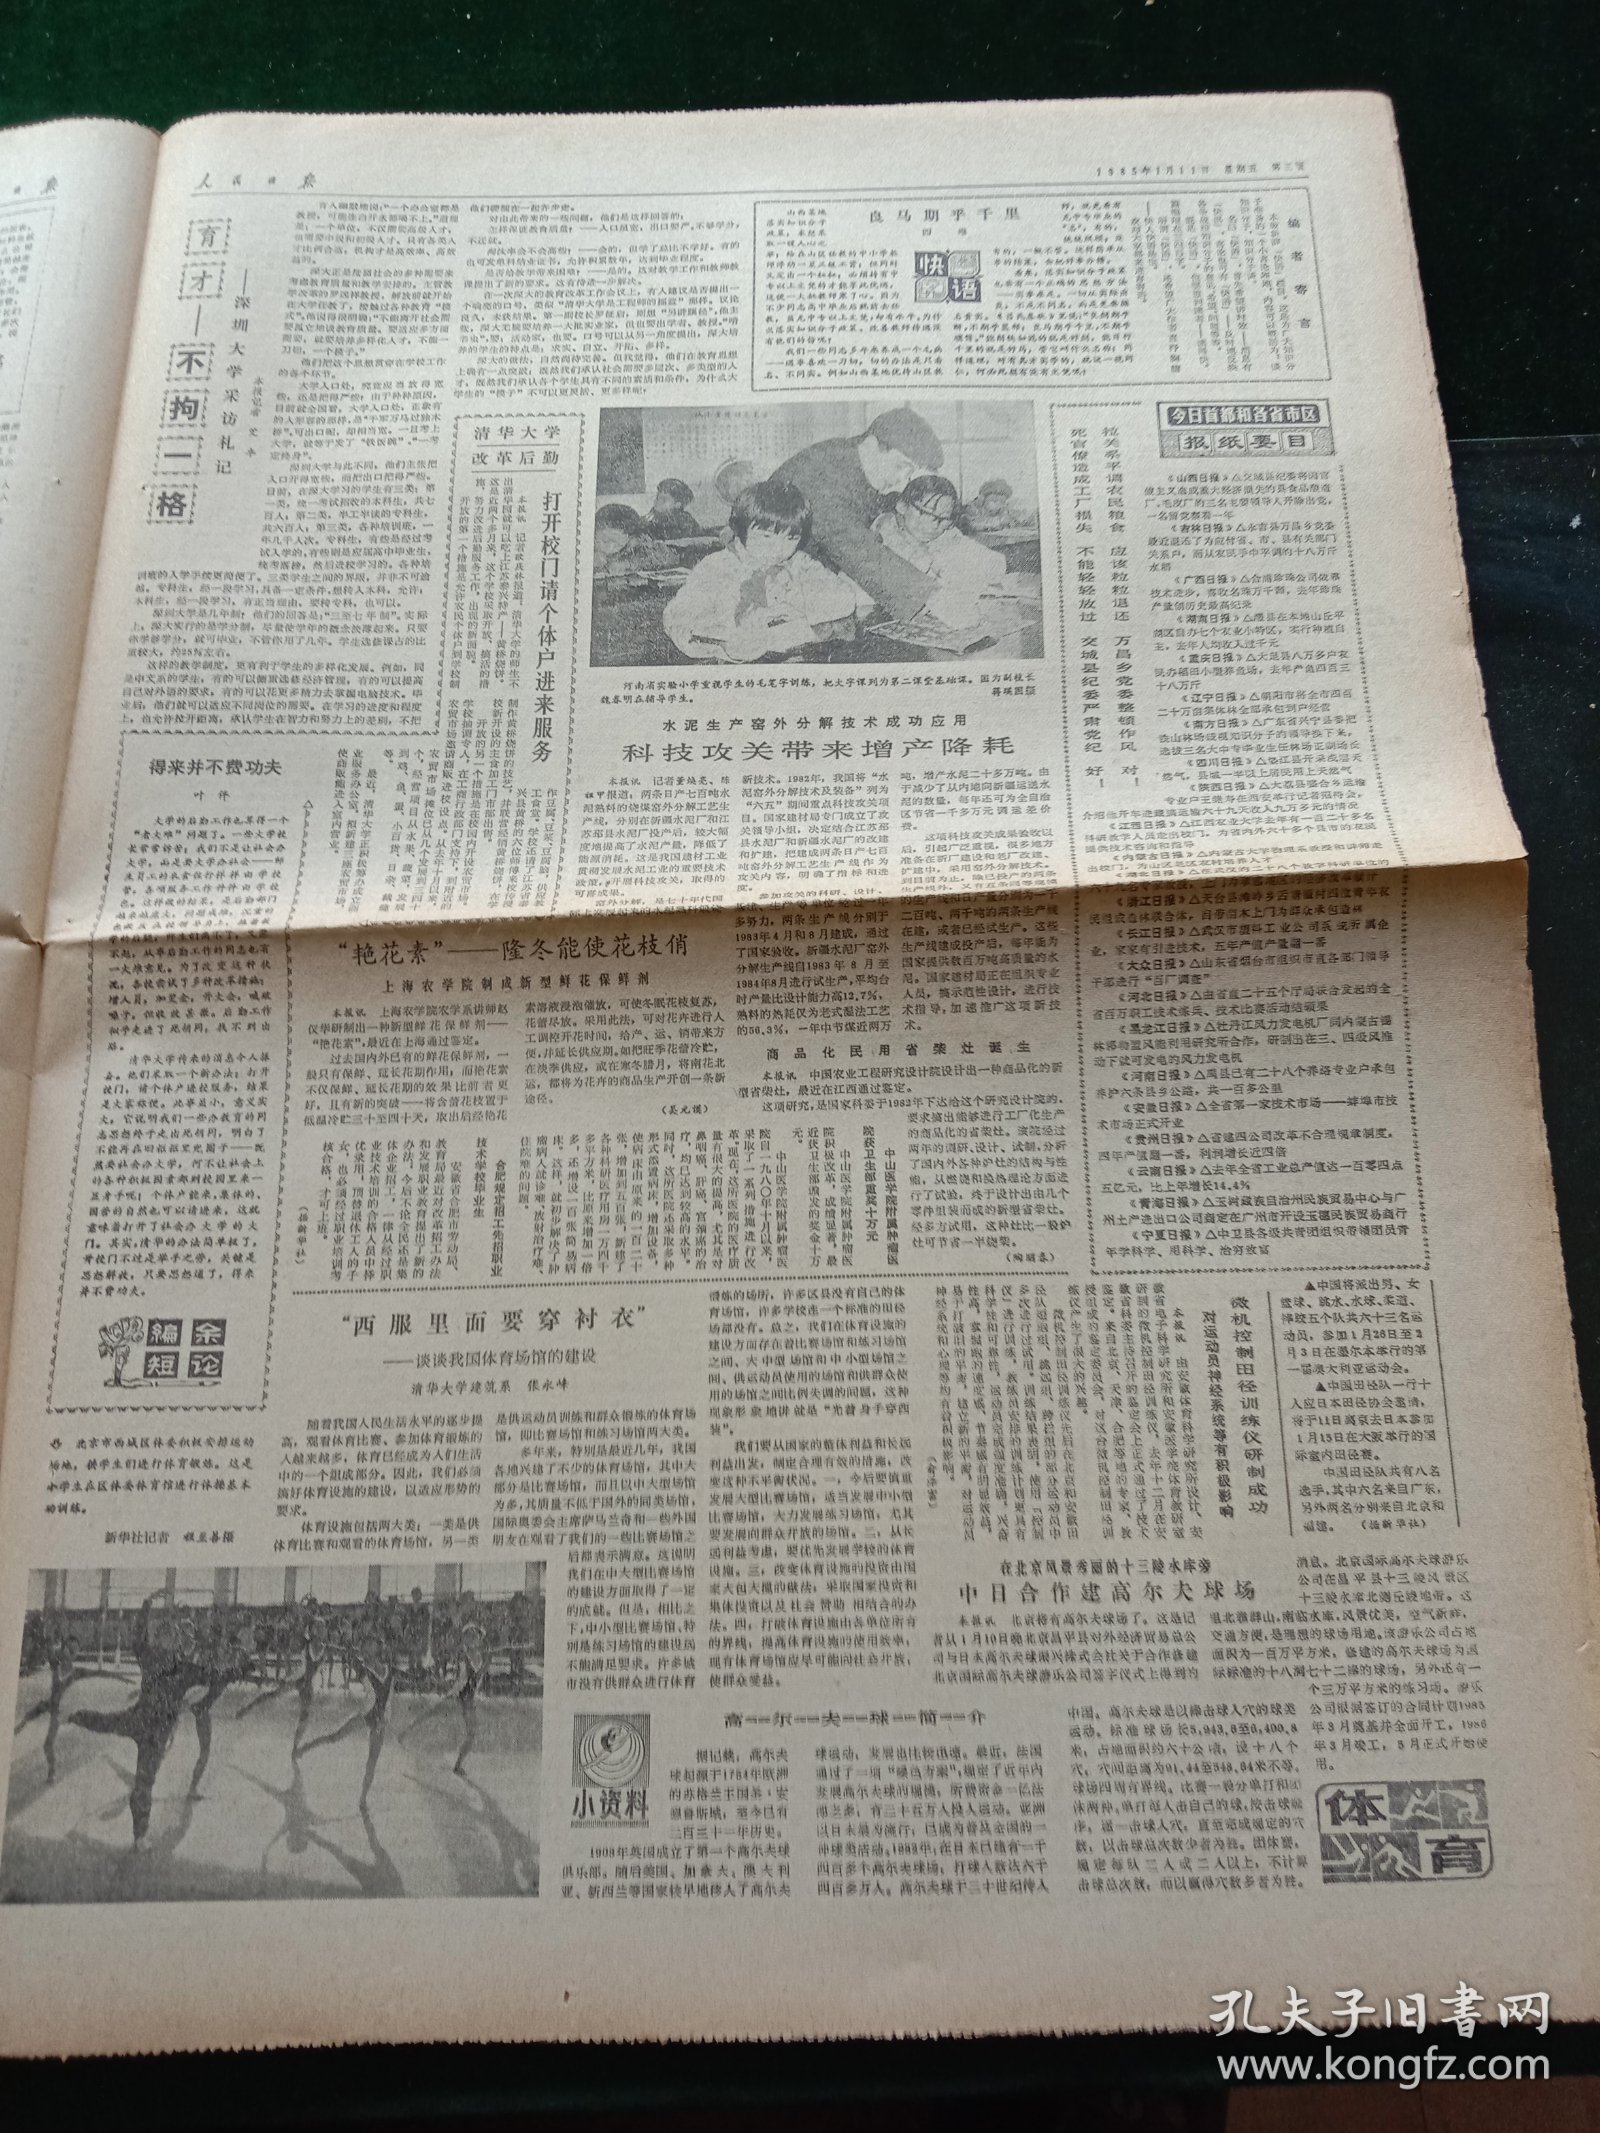 人民日报，1985年1月11日六届人大常委会第九次会议开始举行；中国法律事务公司在京成立，其它详情见图，对开八版。